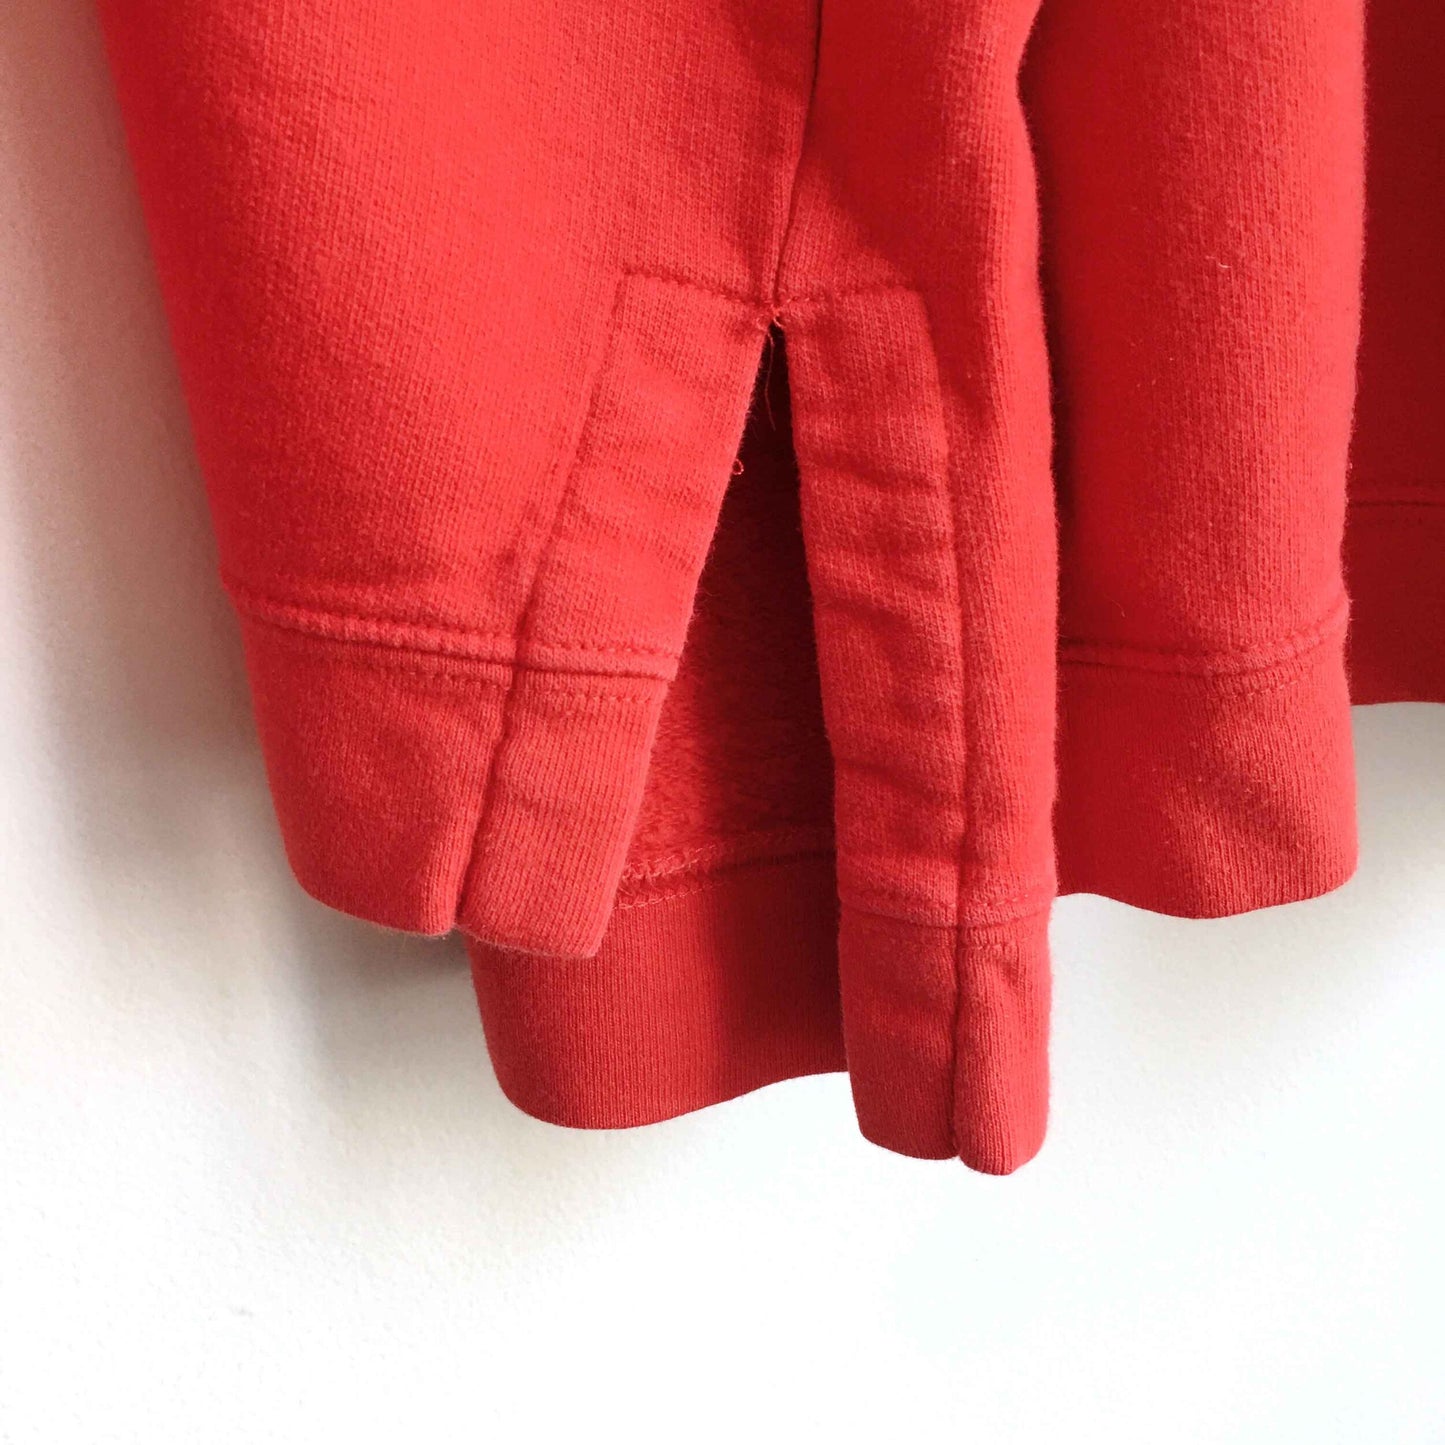 Vintage Liz Claiborne 1/4 zip collared sweatshirt - size Medium